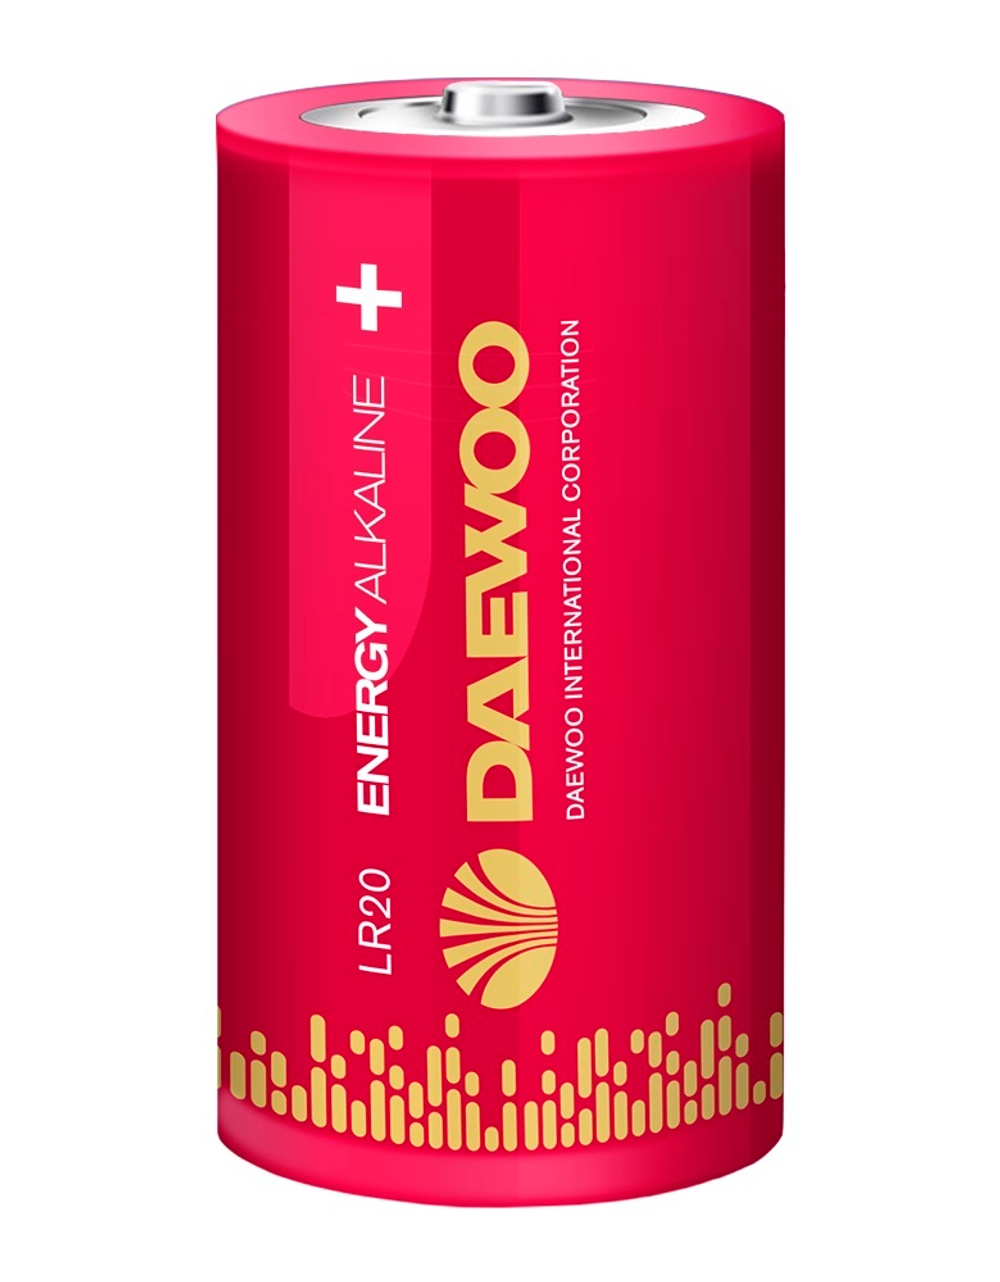 Батарейка Daewoo Energy Alkaline D (LR20), щелочная, BC2